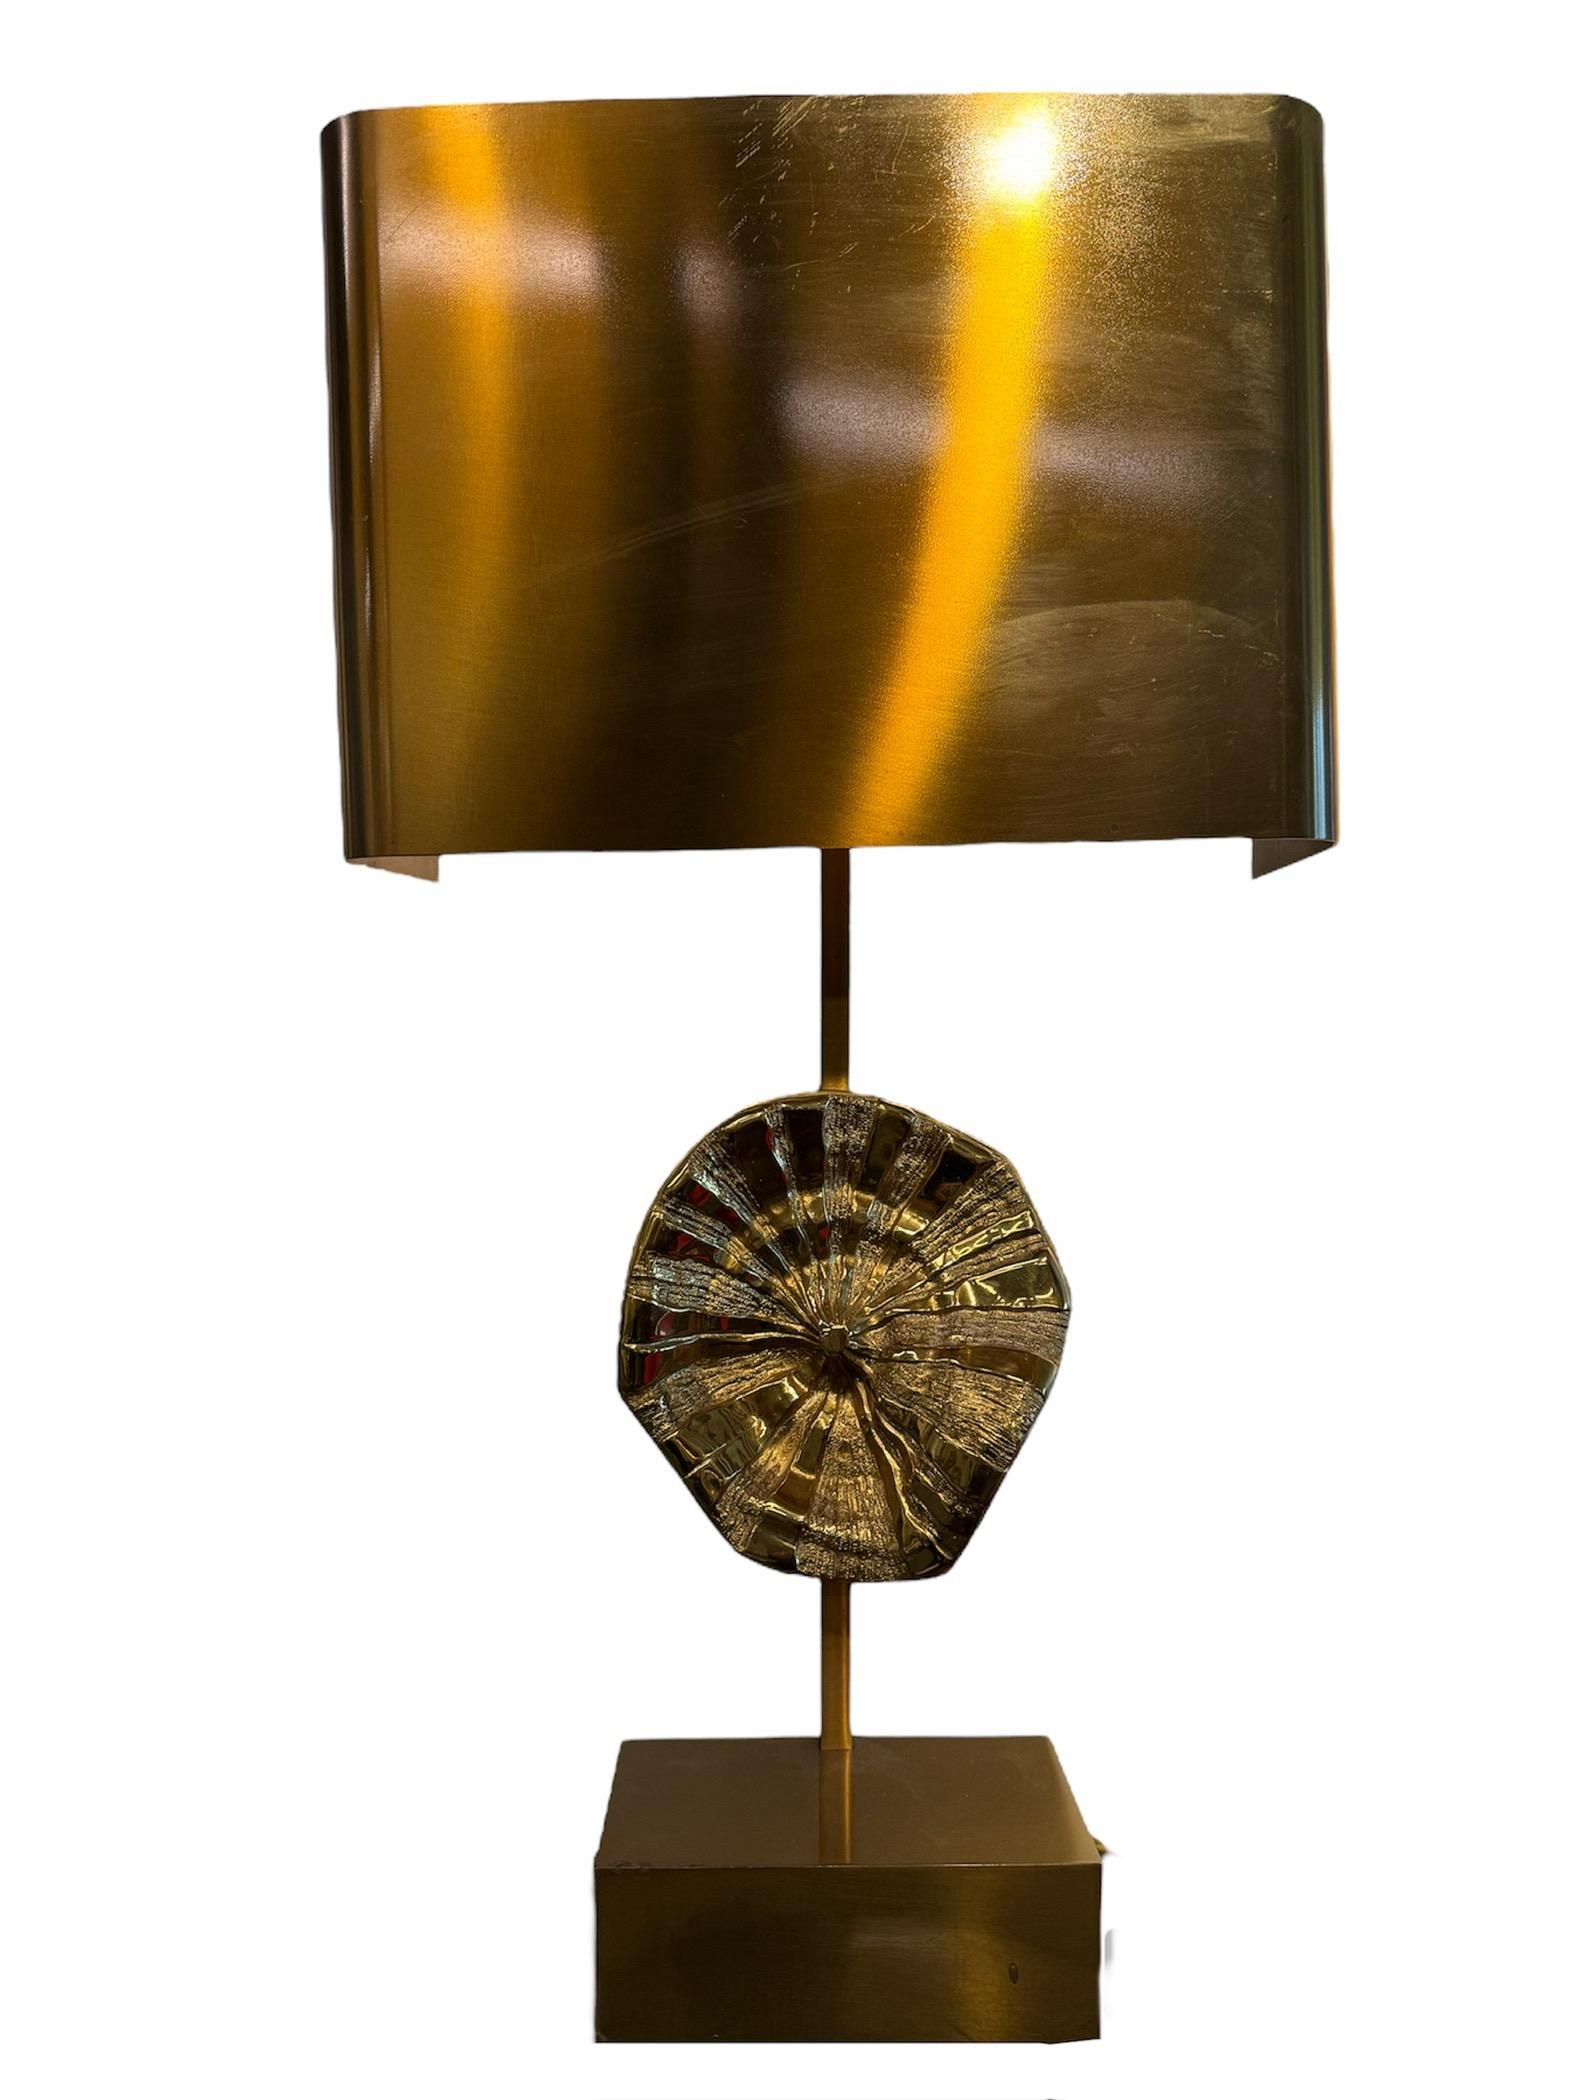 Lampe de bureau en bronze de Maison Charles avec motif de fleur centrale
Cette exquise lampe de bureau de la Maison Charles marie harmonieusement l'élégance classique et le charme fantaisiste. Fabriquée par le célèbre fabricant français de